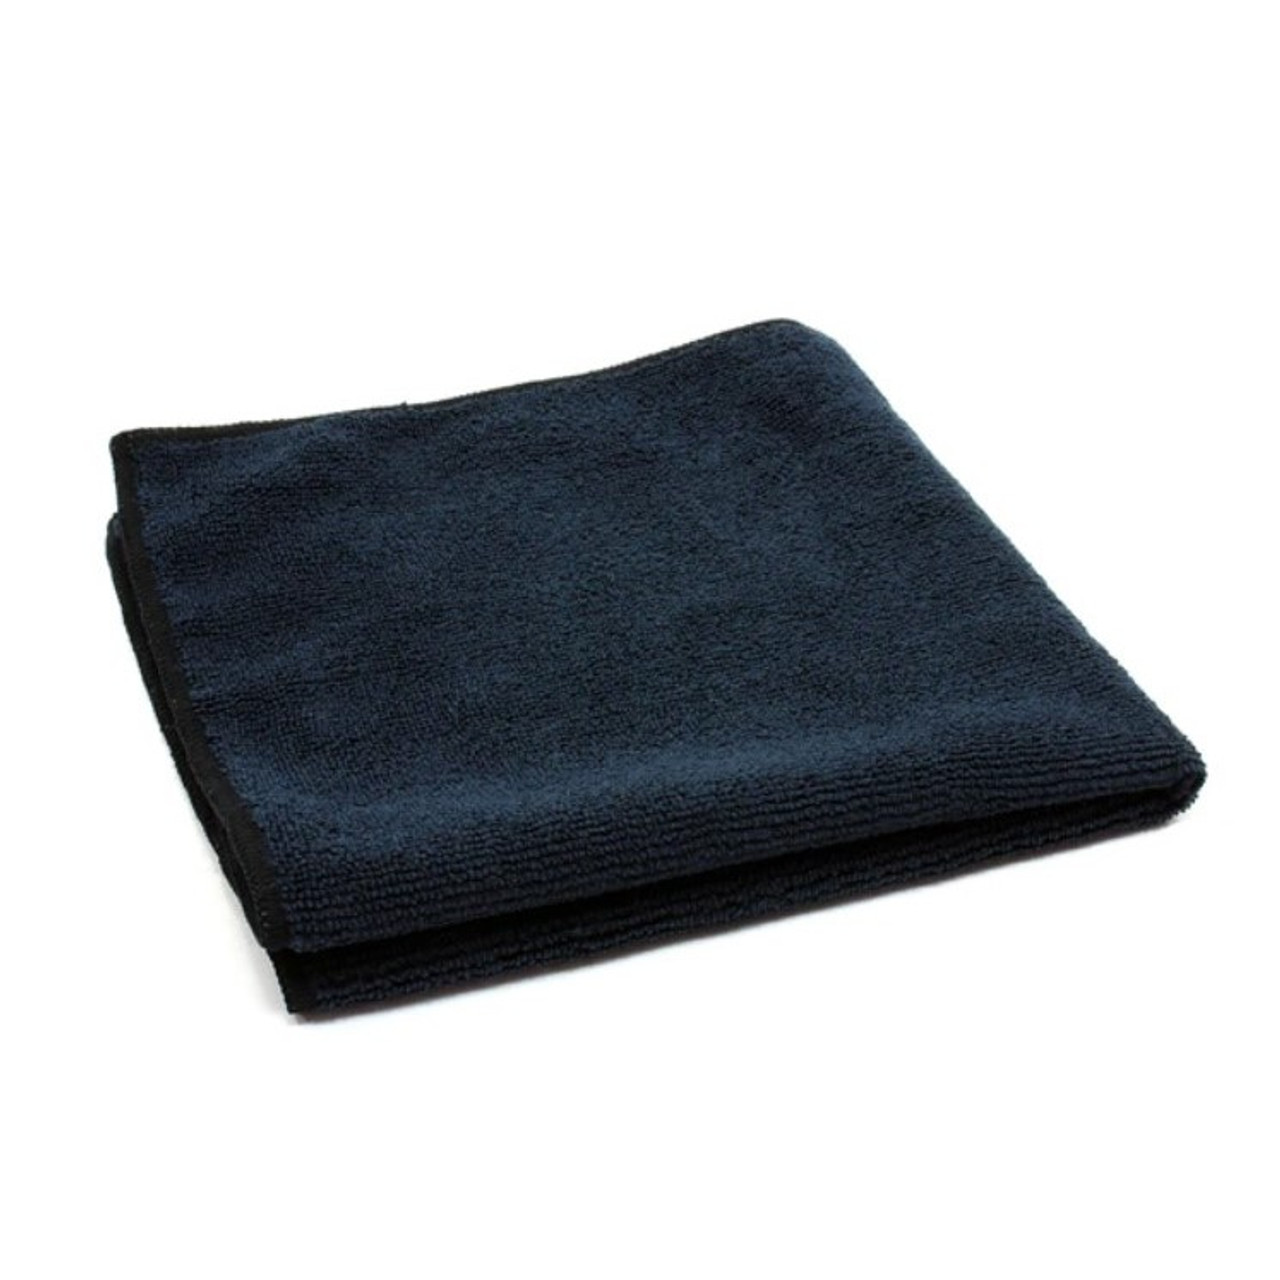 Microfiber Towels Bulk 16x16 300 GSM Black (10 Pack)